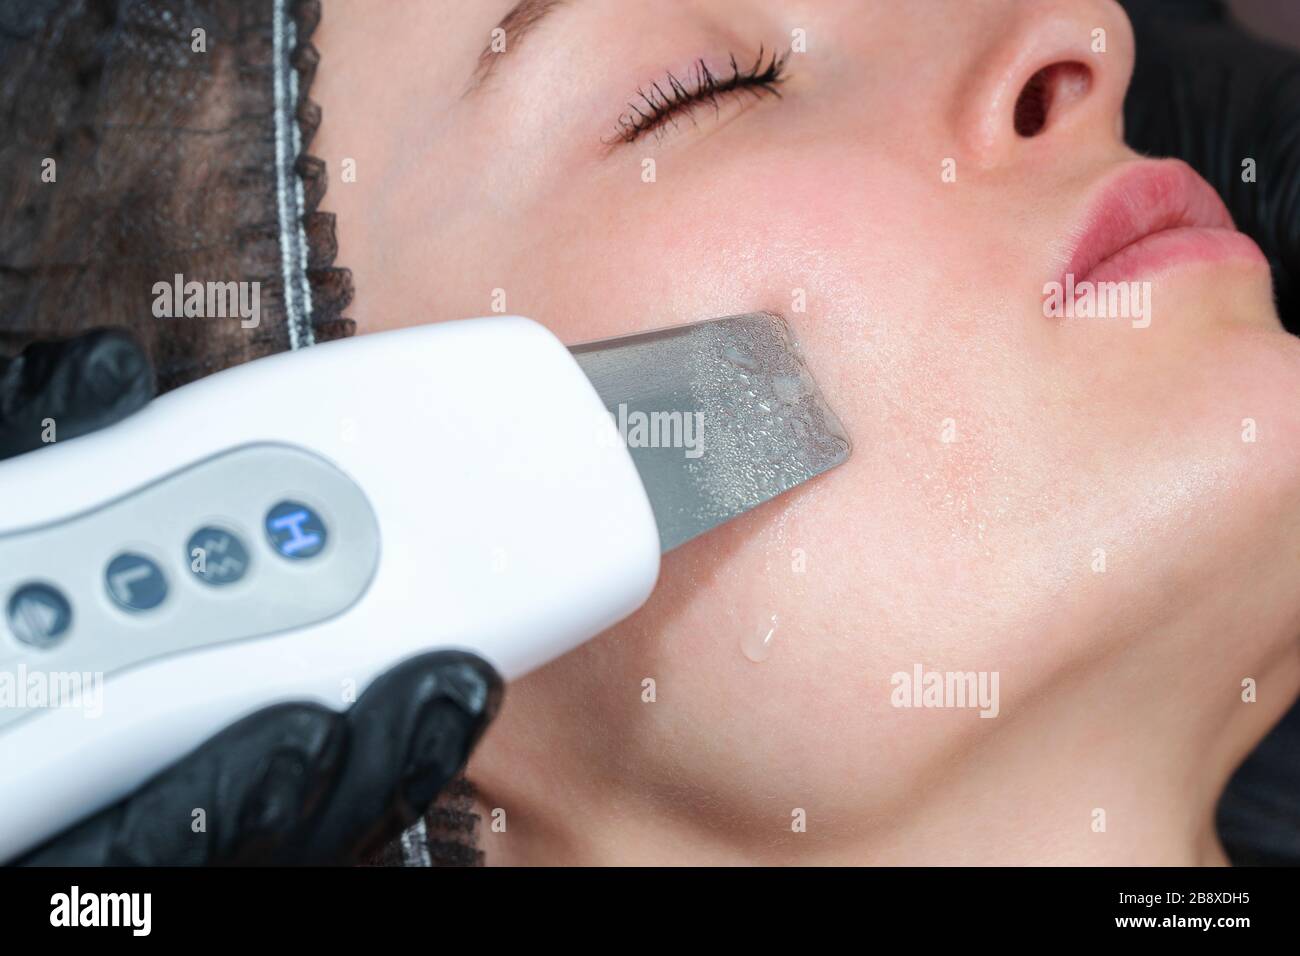 nettoyage du visage à l'aide d'un appareil à ultrasons Banque D'Images